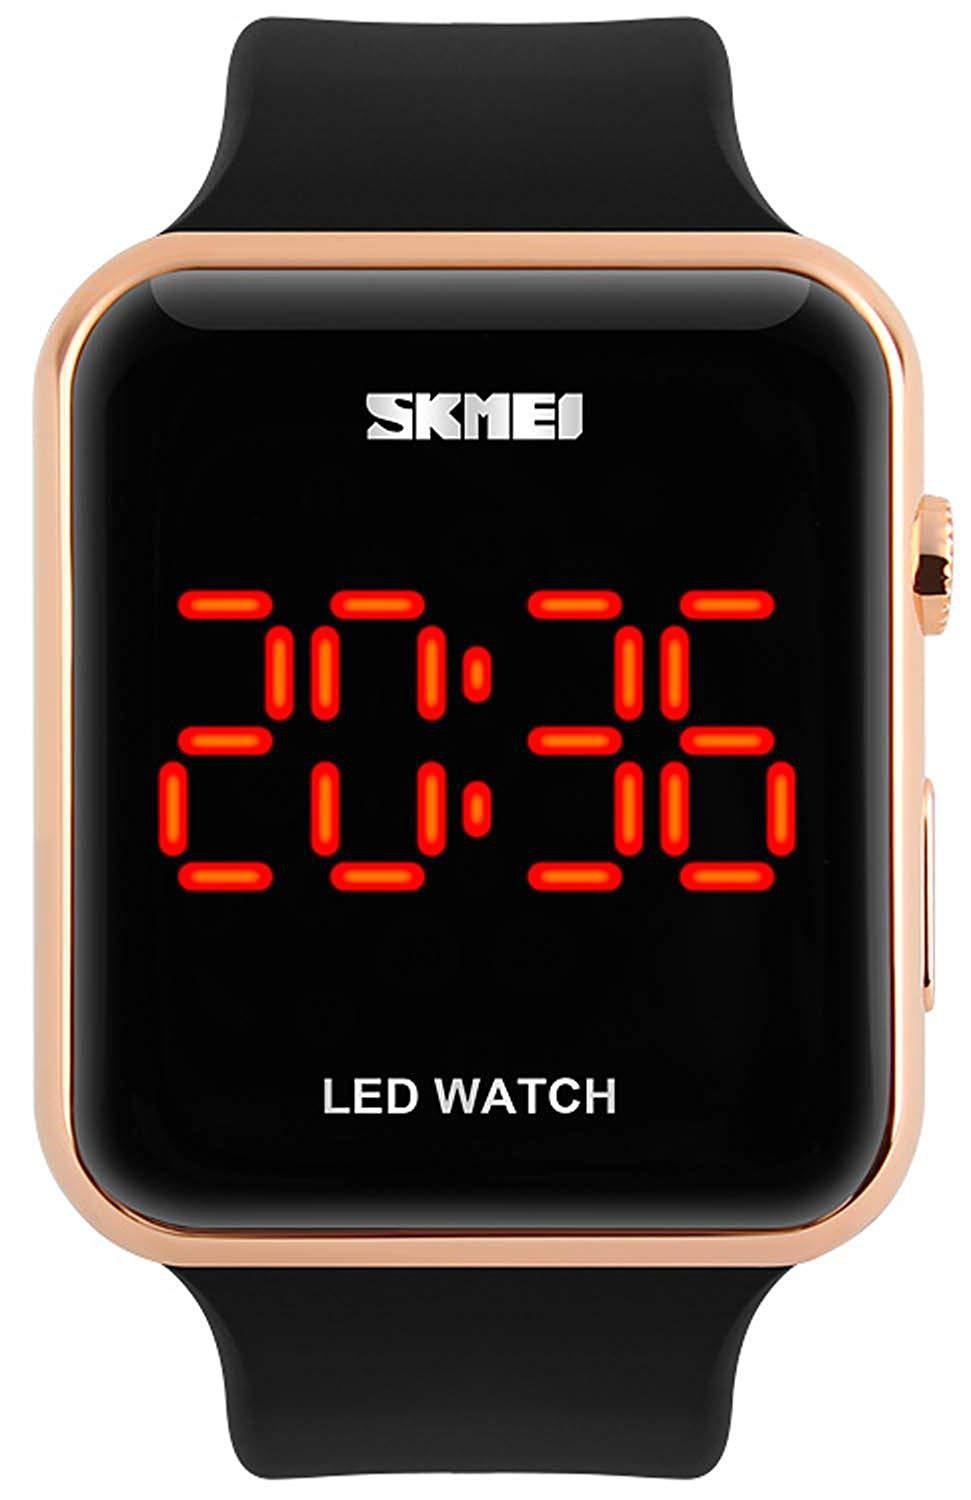 Недорогие наручные электронные часы. Часы унисекс SKMEI led watch. SKMEI часы электронные led watch. Часы SKMEI квадратные. SKMEI часы 12935441.